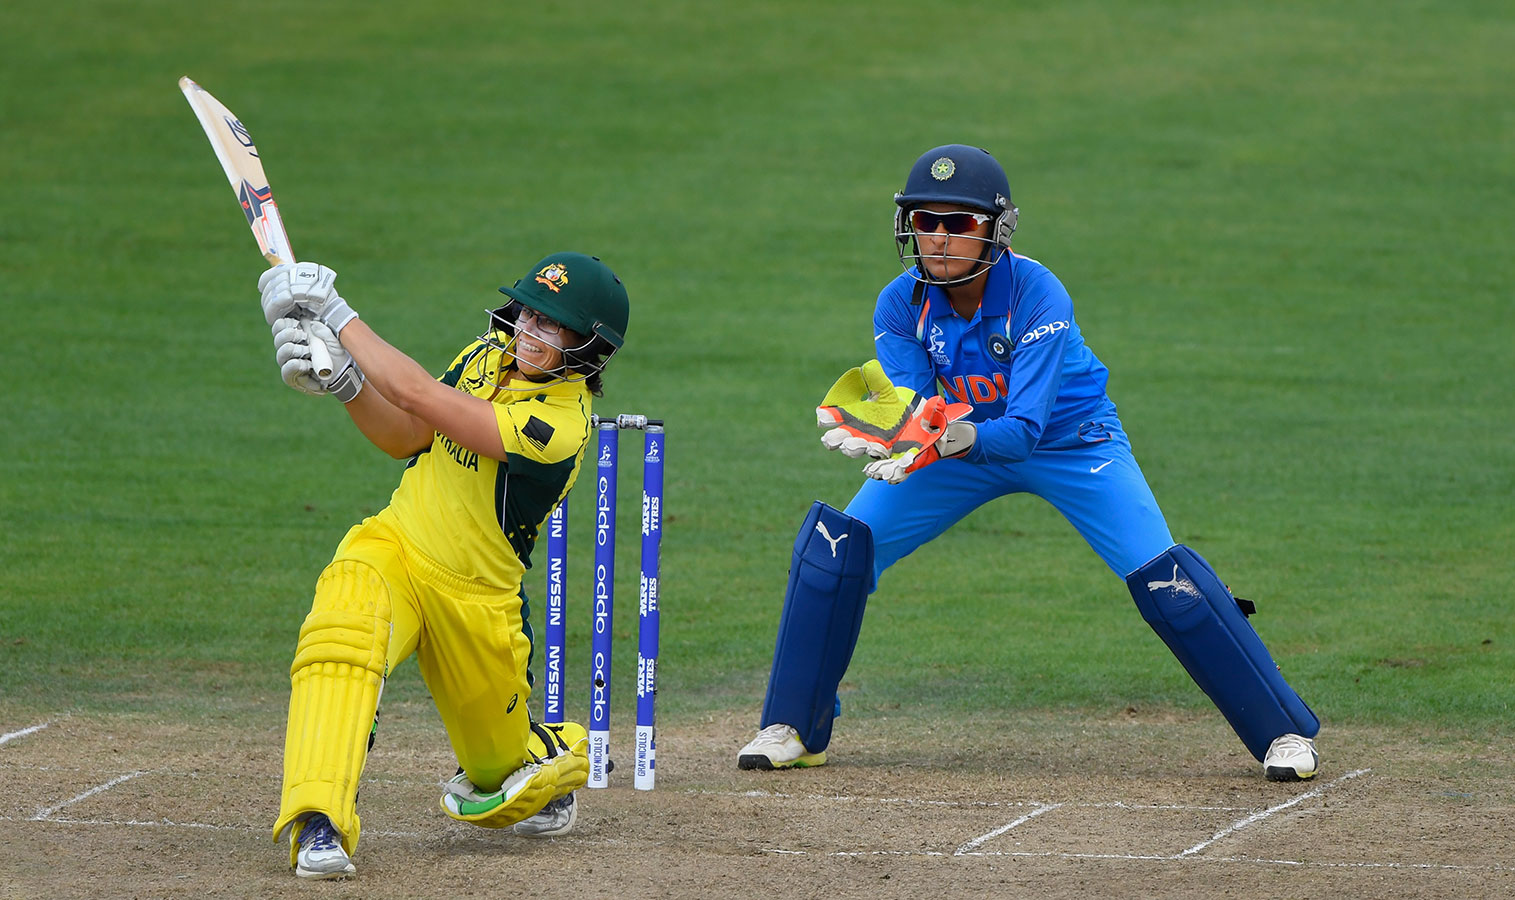 महिला विश्वकप 2017: ऑस्ट्रेलिया के सामने करना पड़ा हार का सामना, लेकिन बड़े रिकार्ड्स बना गया भारत 2